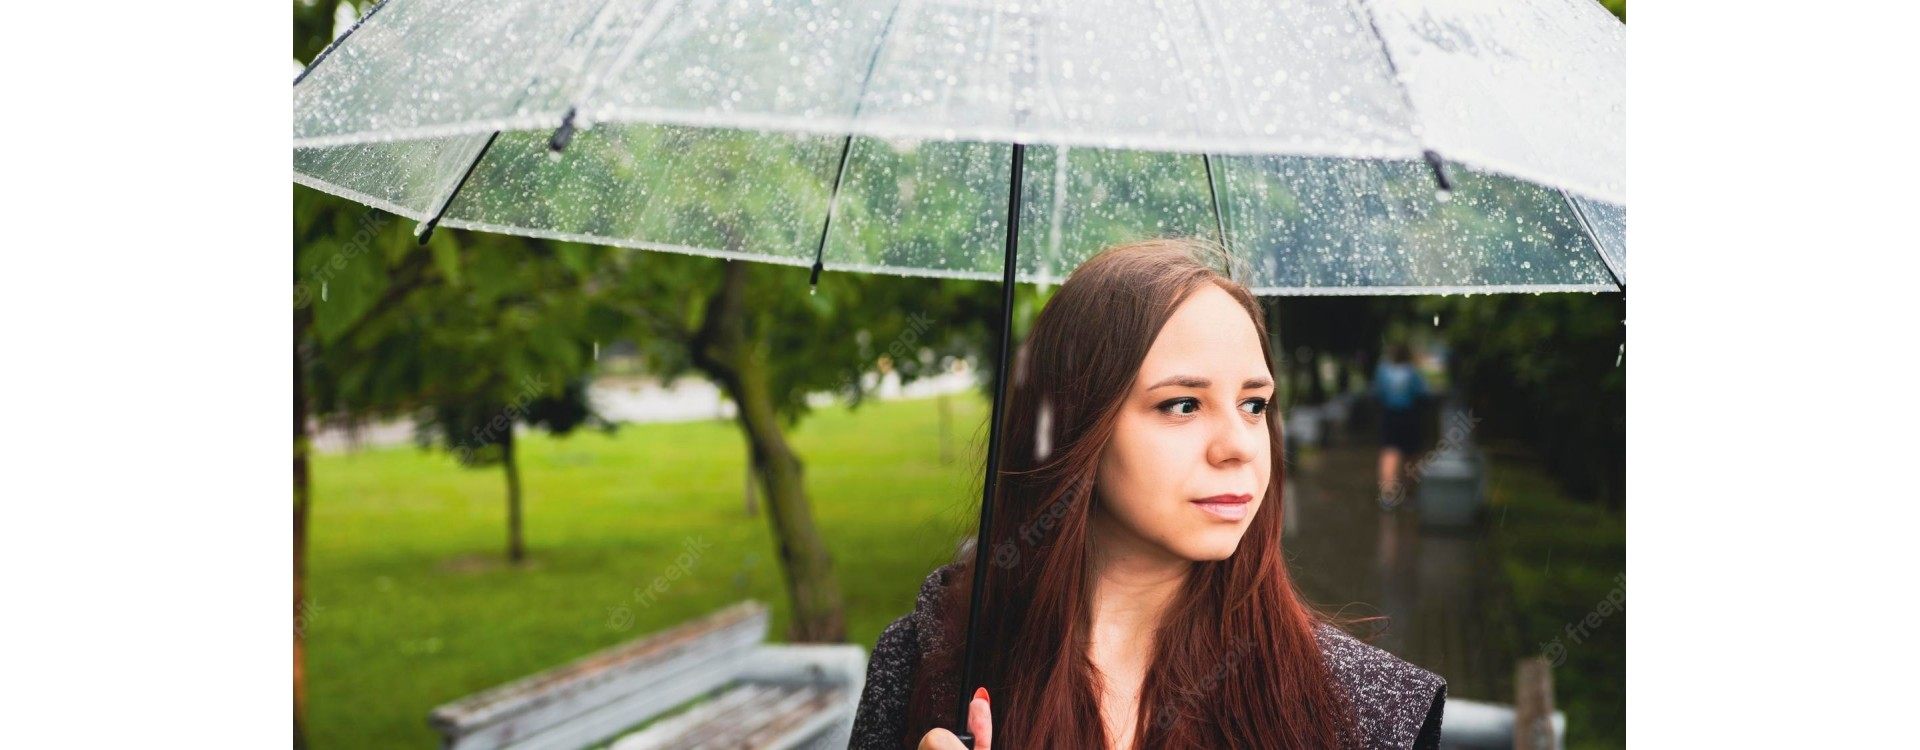 Capelli: come evitare l'inconveniente della pioggia ?